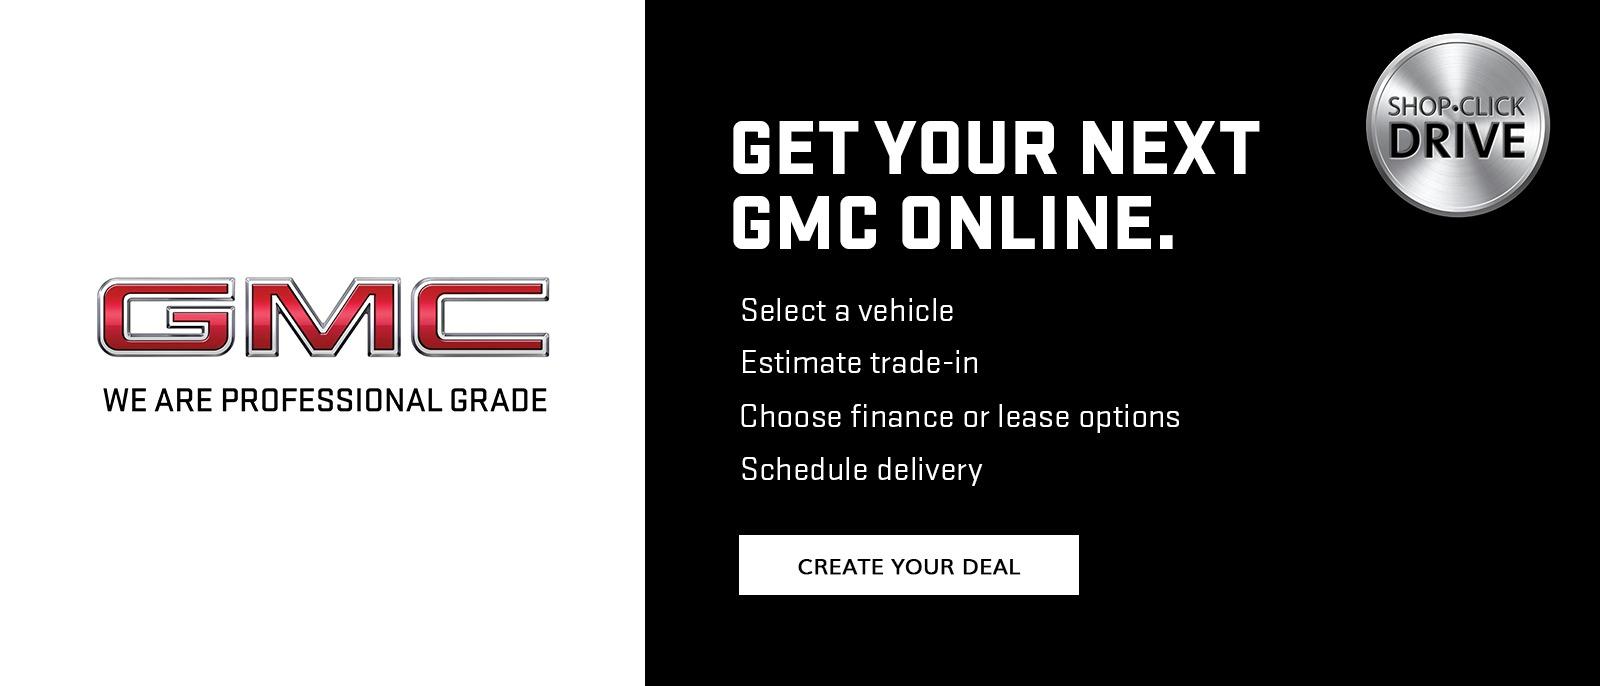 Get Your Next GMC Online.